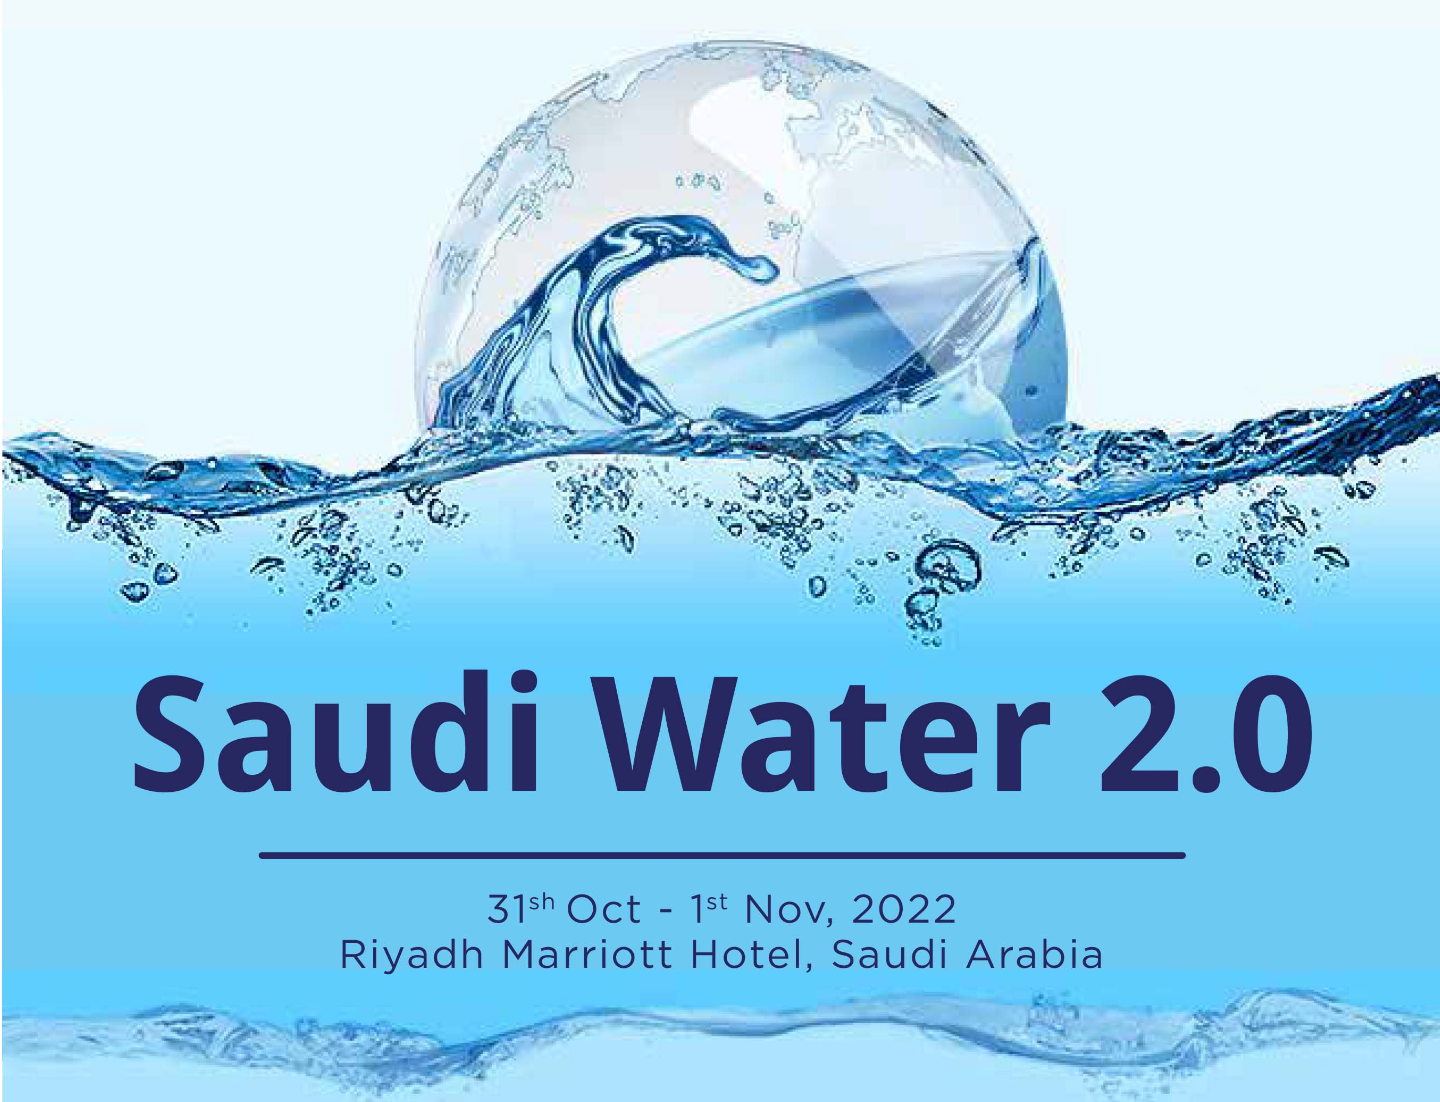 Saudi Water 2.0